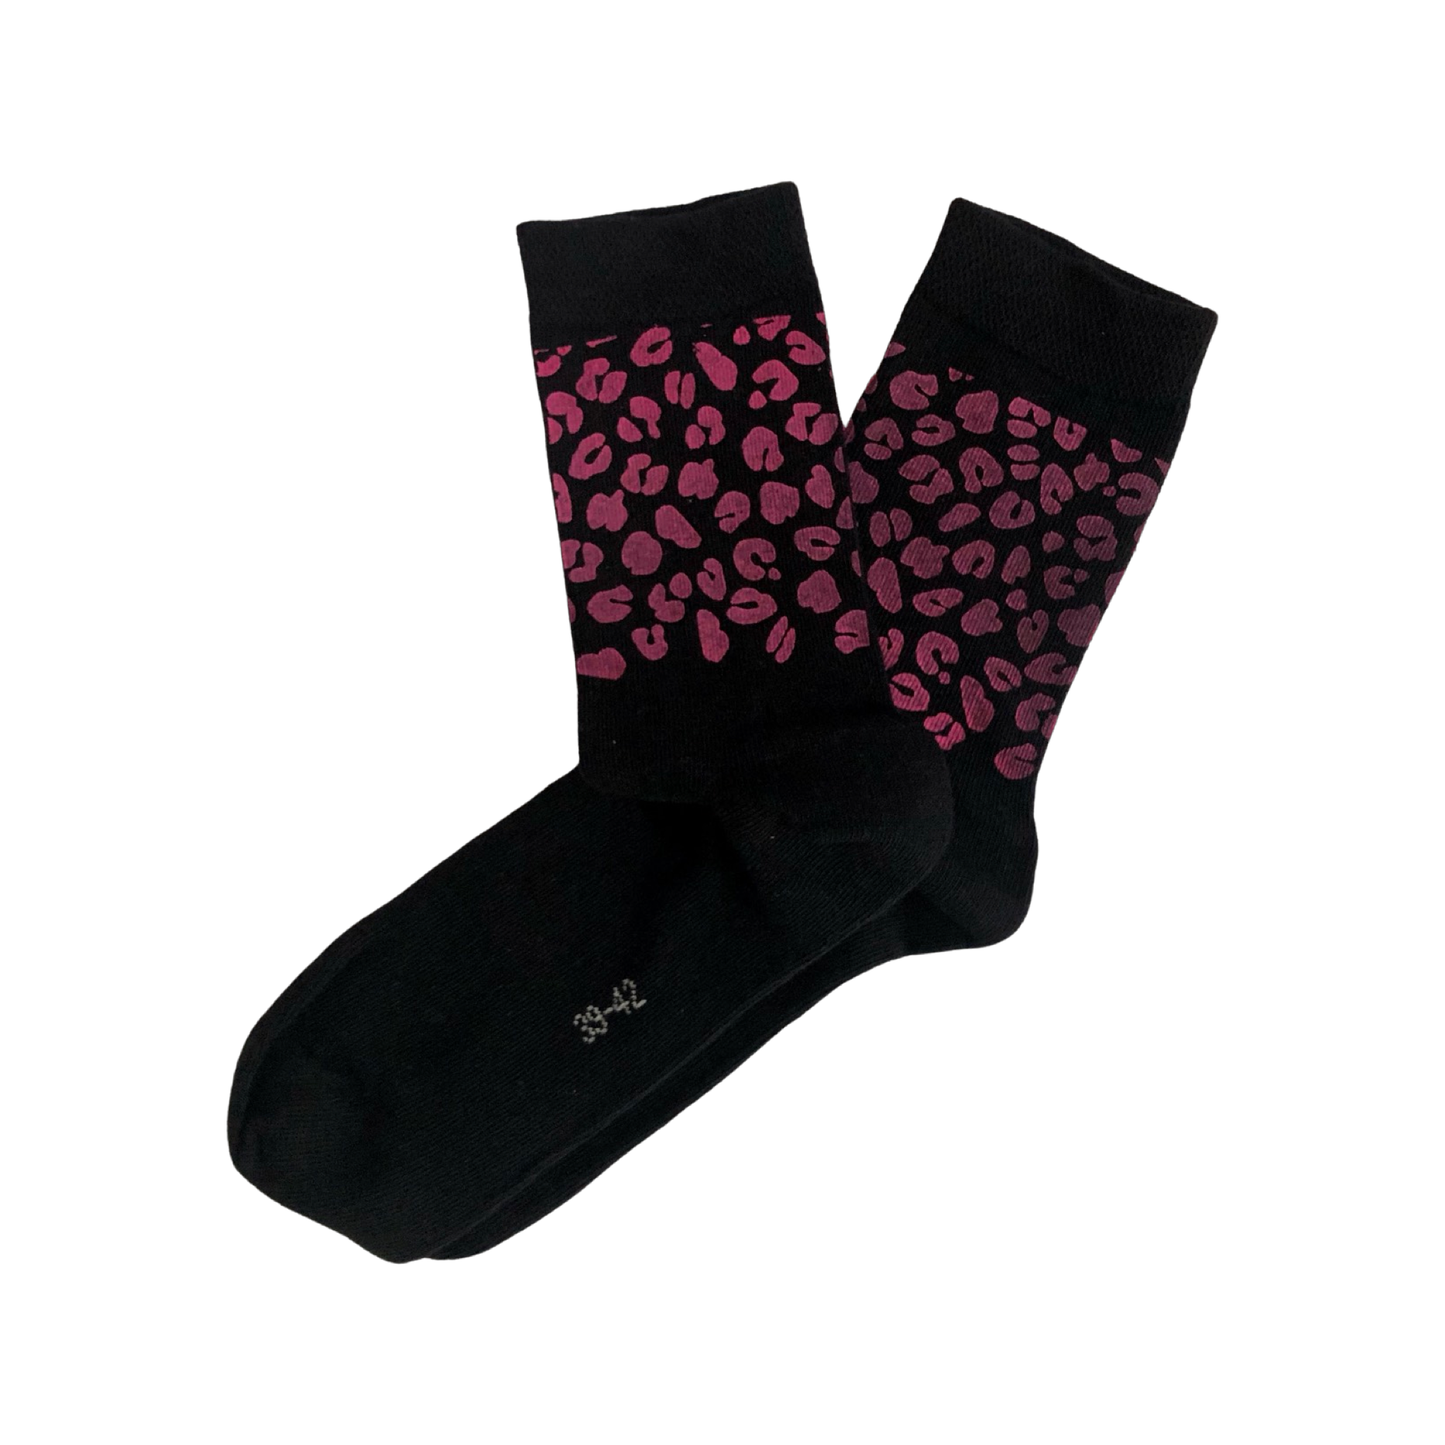 Socken mit handmade Siebdruck Leoprint